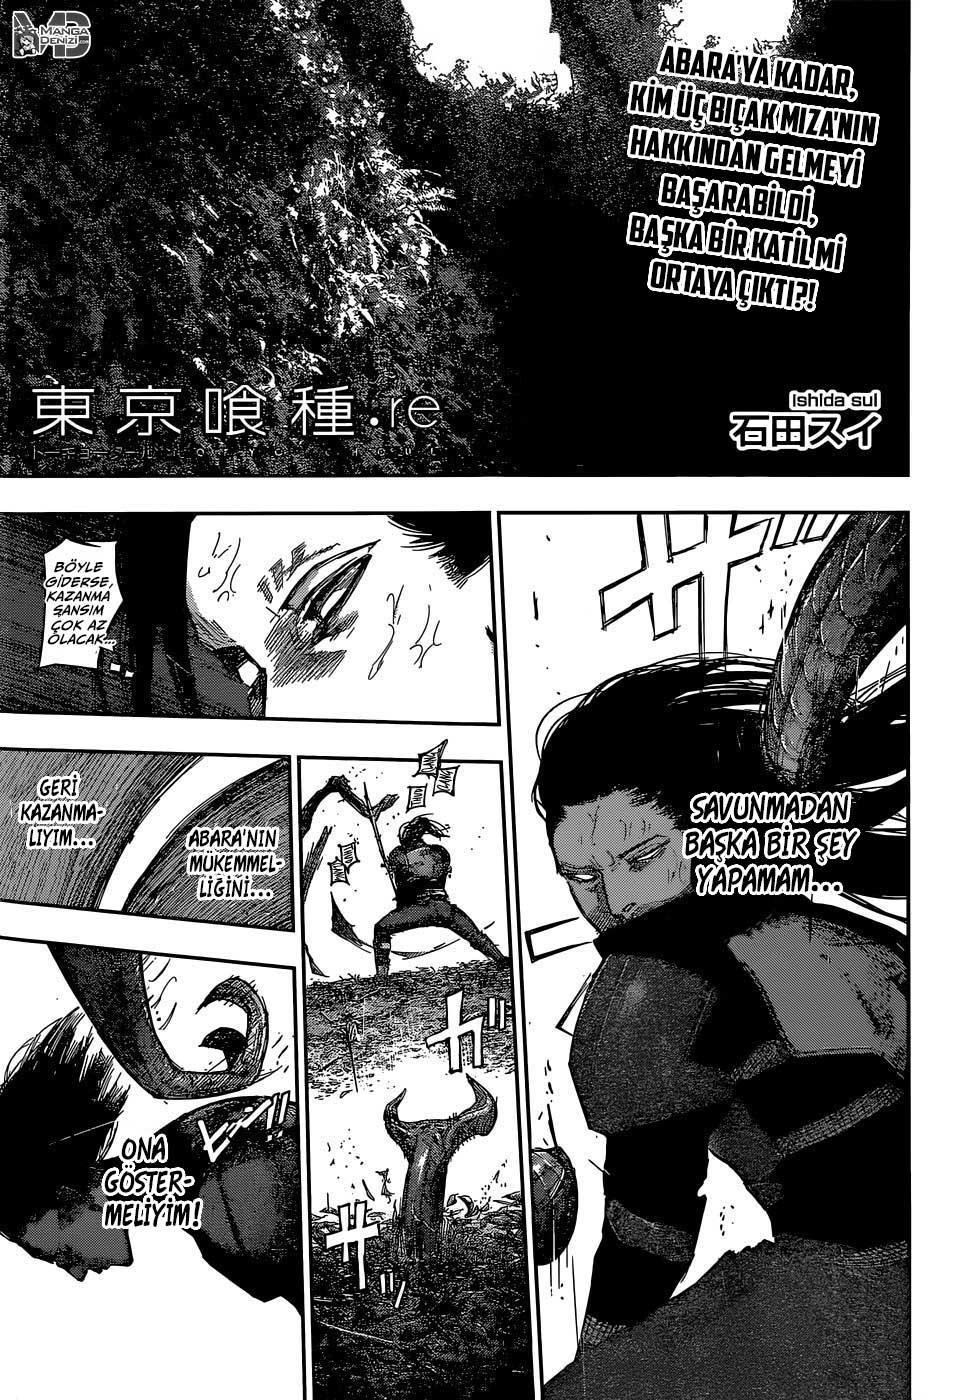 Tokyo Ghoul: RE mangasının 080 bölümünün 2. sayfasını okuyorsunuz.